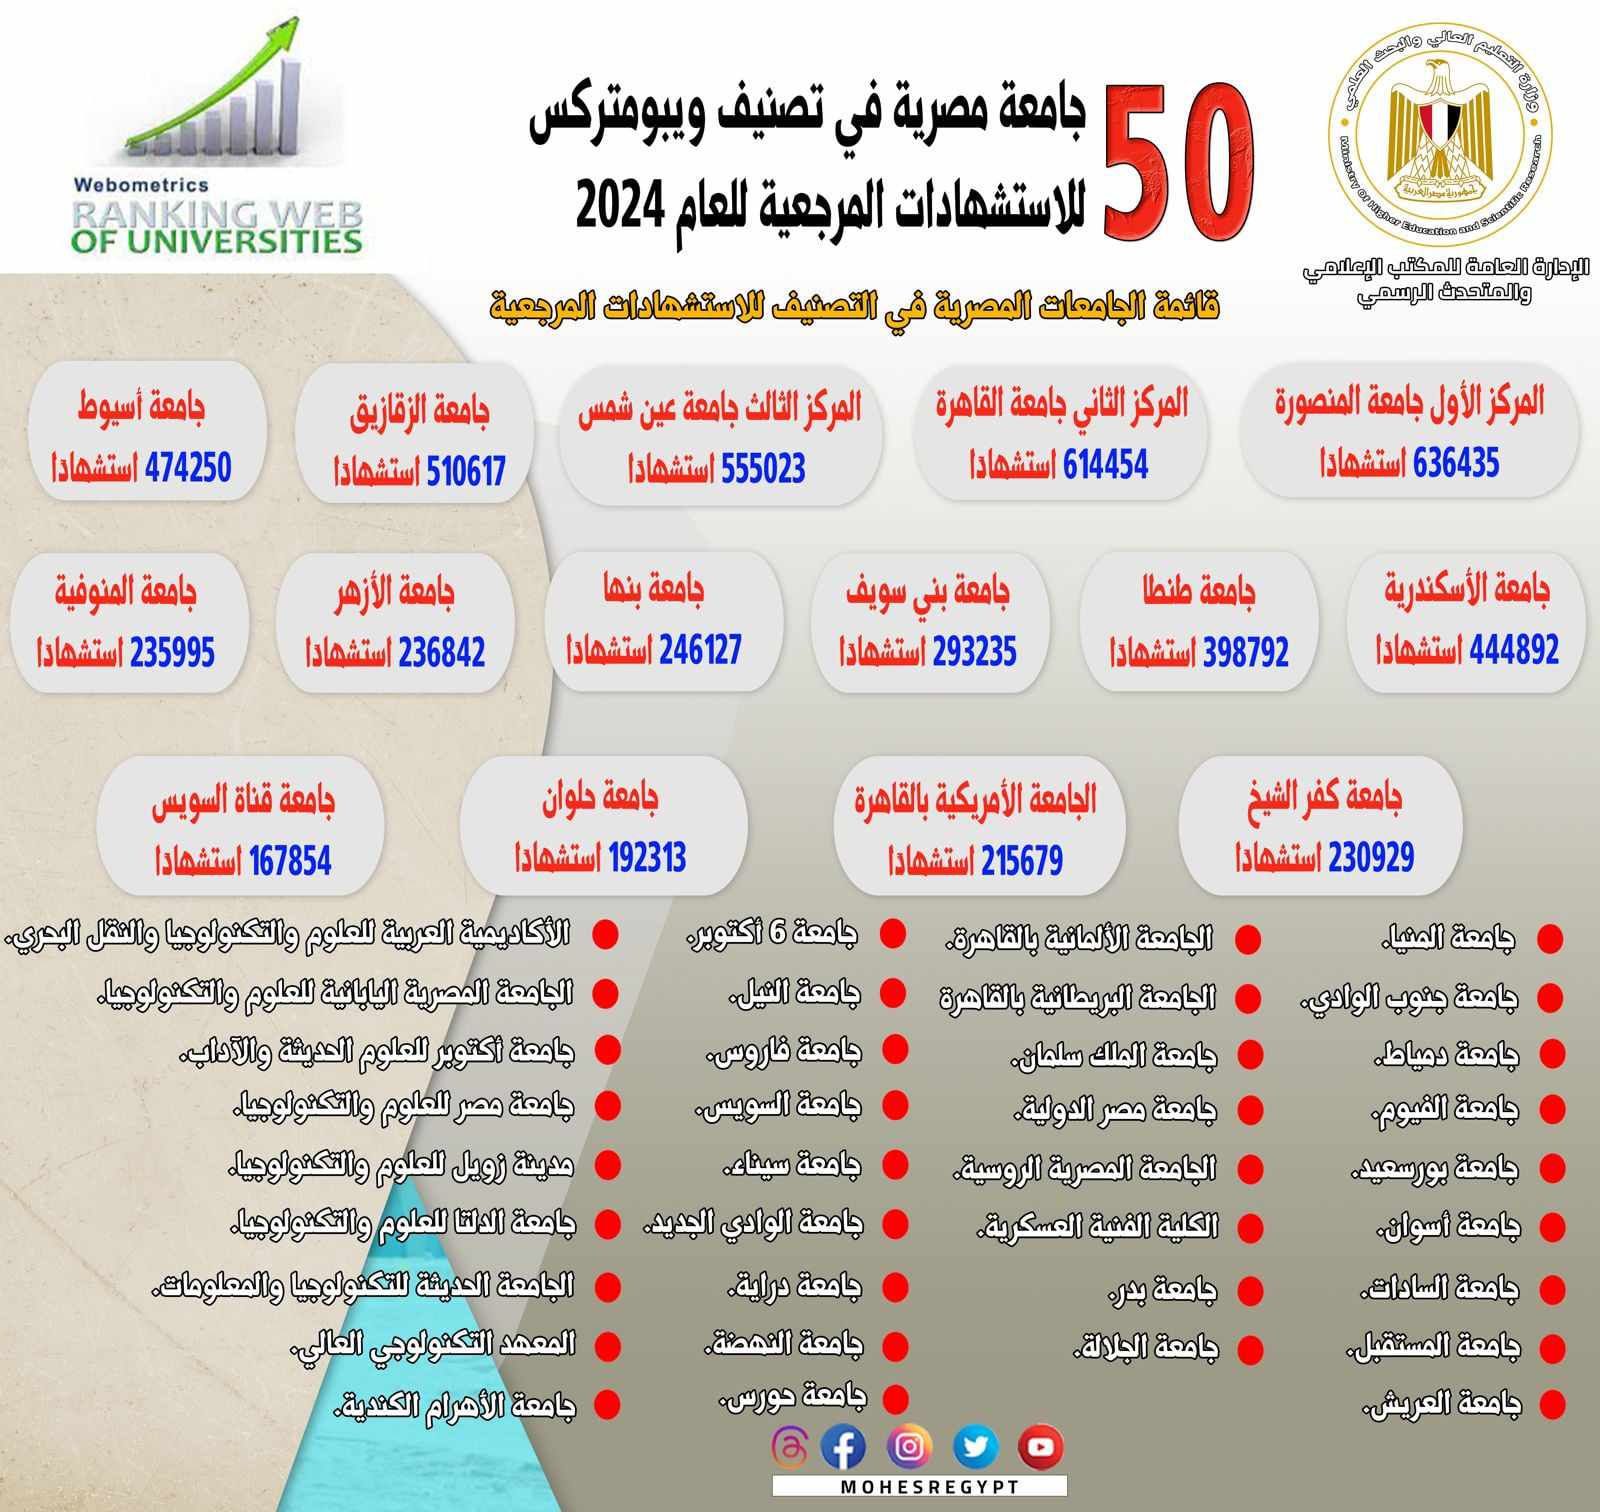 التعليم العالي: إدراج 50 جامعة مصرية في تصنيف ويبومتركس للاستشهادات المرجعية للعام 2024